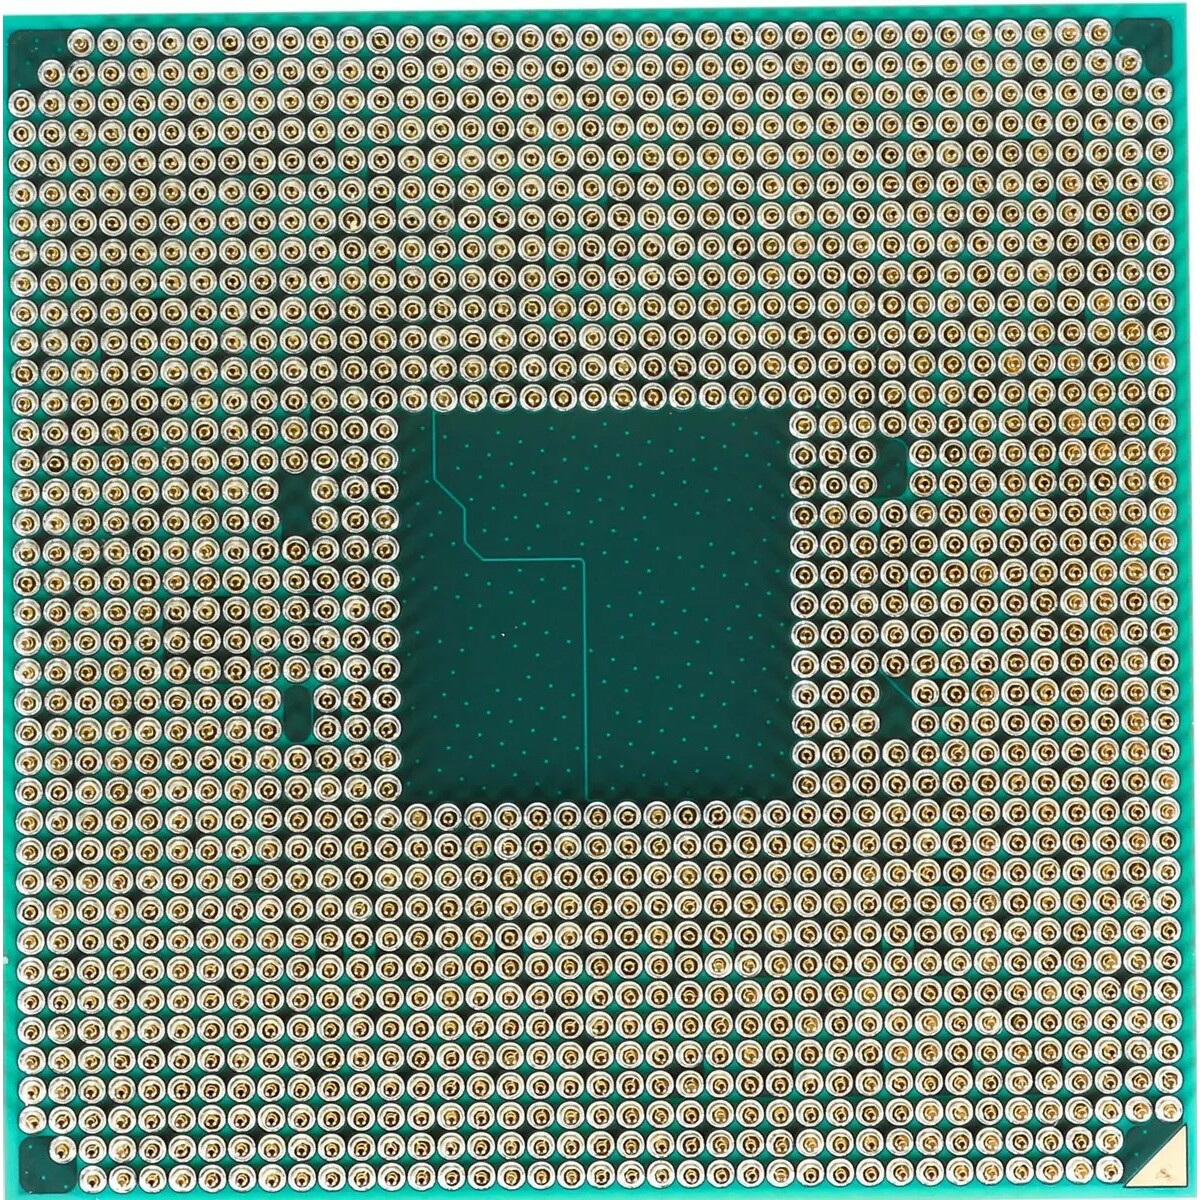 Процессор AMD Ryzen 5 PRO 4650G AM4 (100-000000143) TRAY